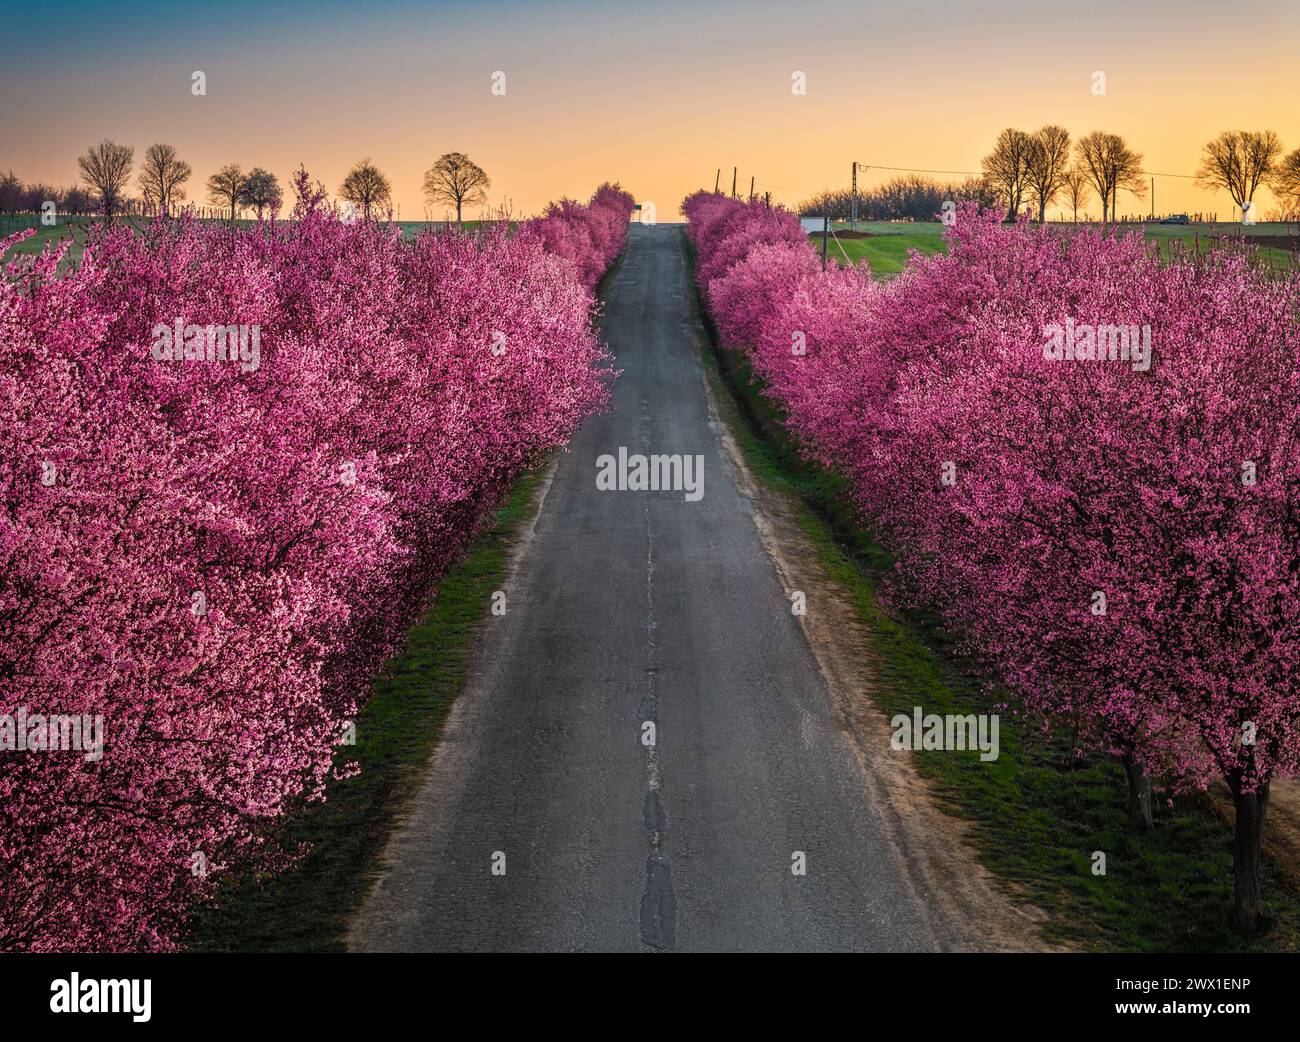 Berkenye, Ungheria - Vista aerea di prugne selvagge rosa in fiore lungo la strada nel villaggio di Berkenye in una mattina di primavera con caldo sole dorato Foto Stock